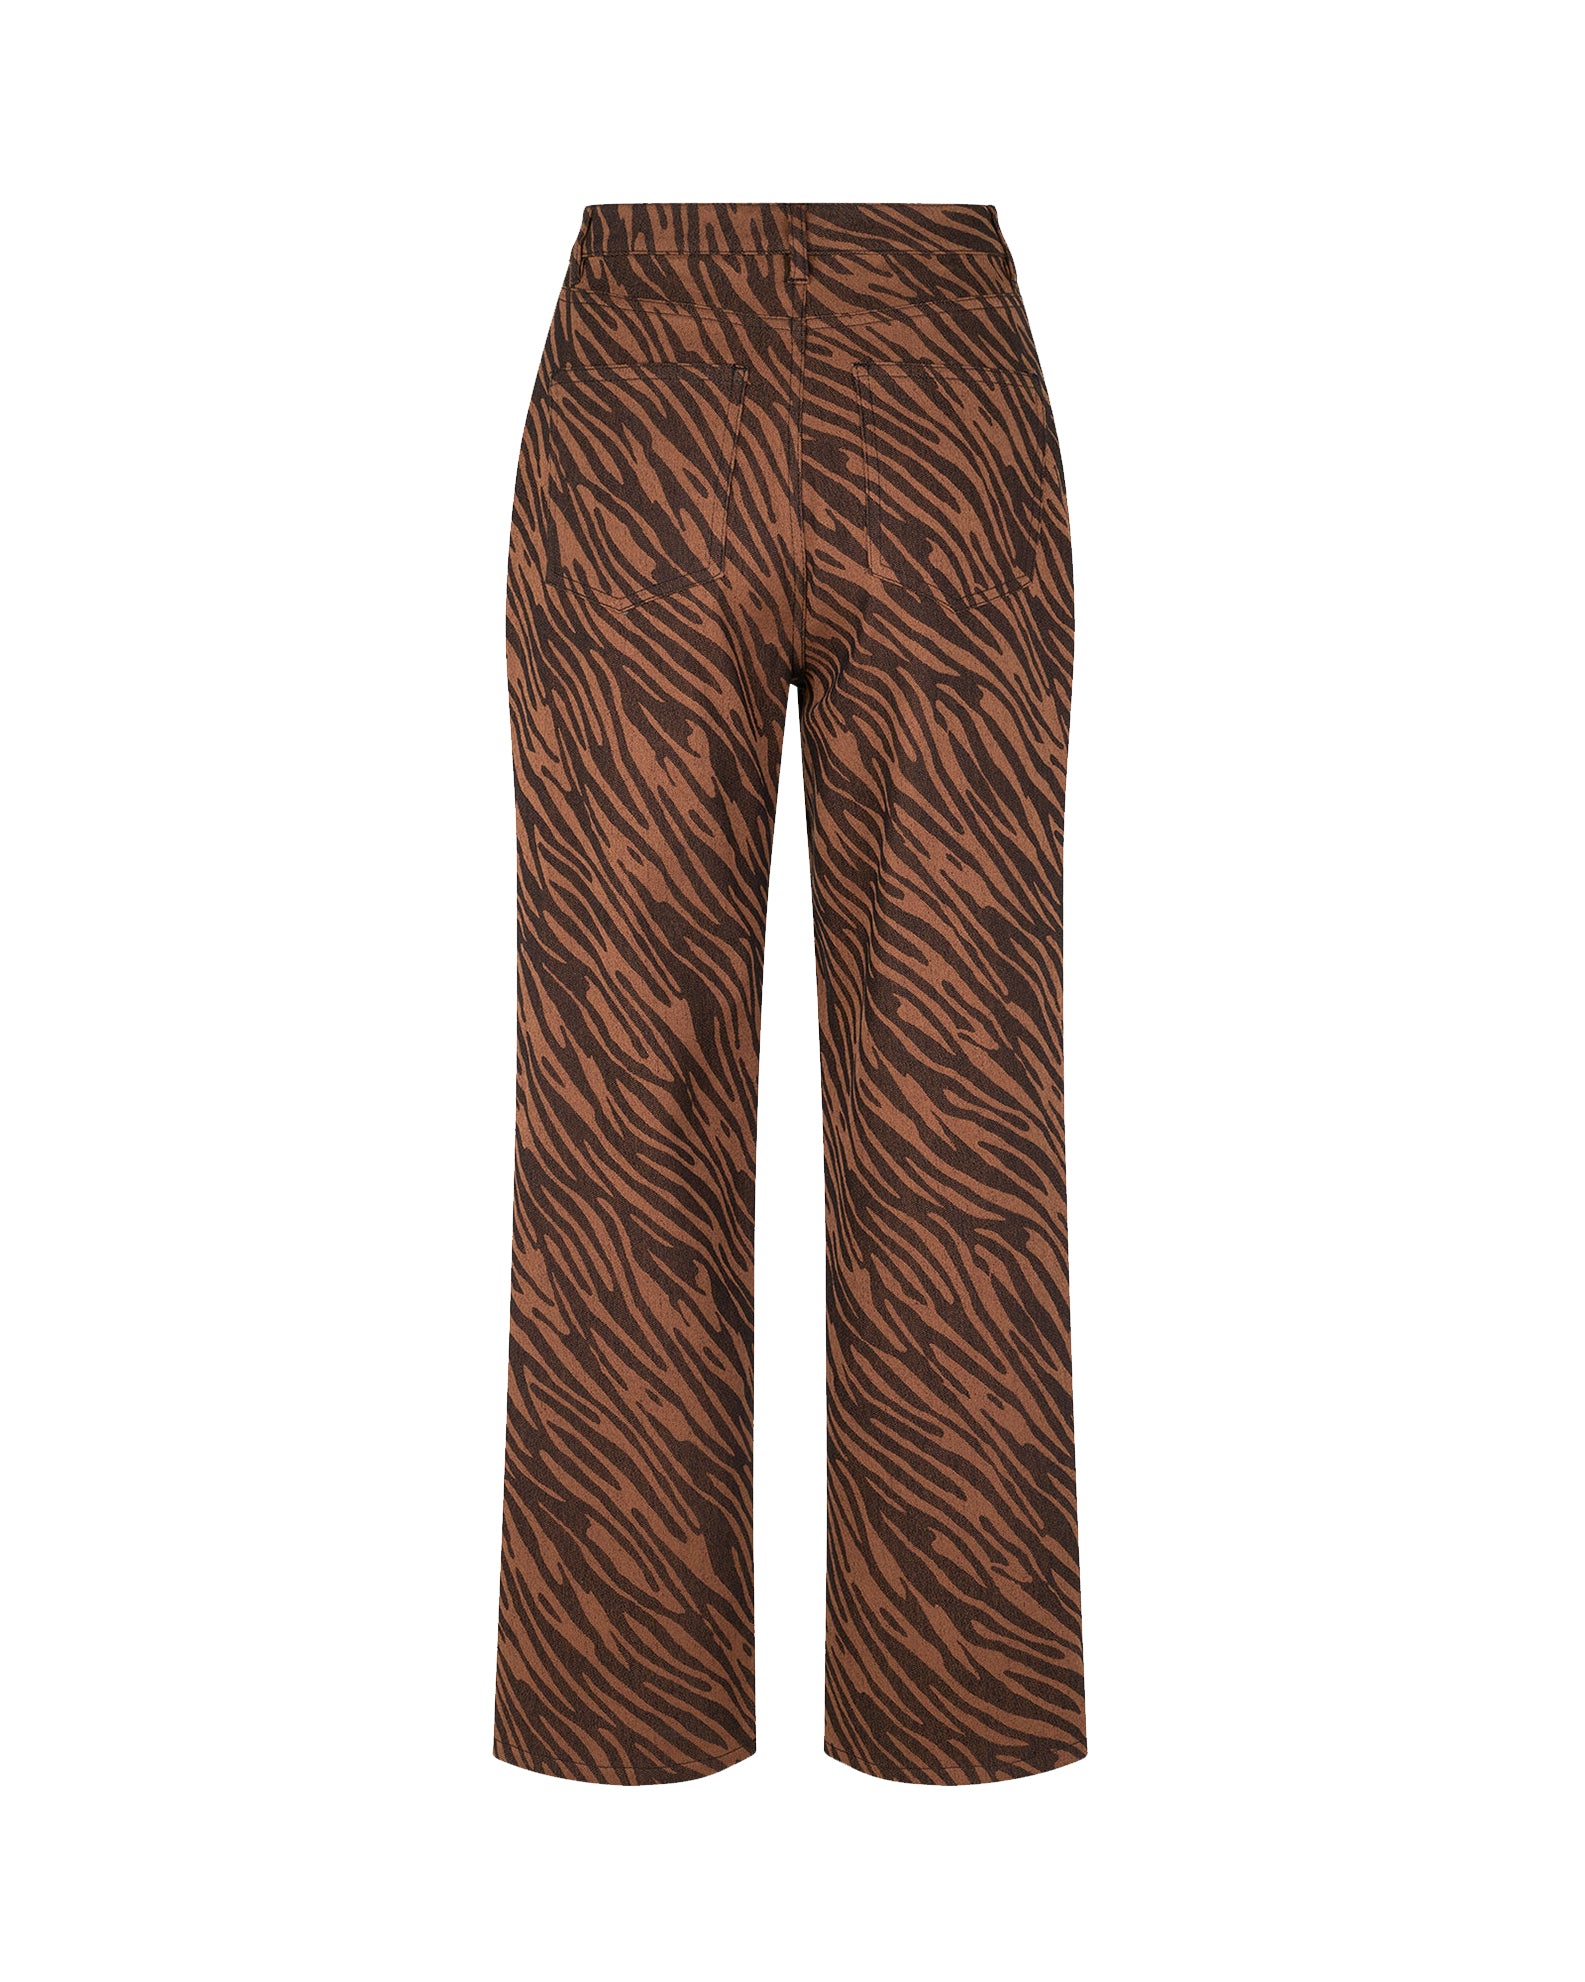 Pantalones Noa 14601 - Tiger